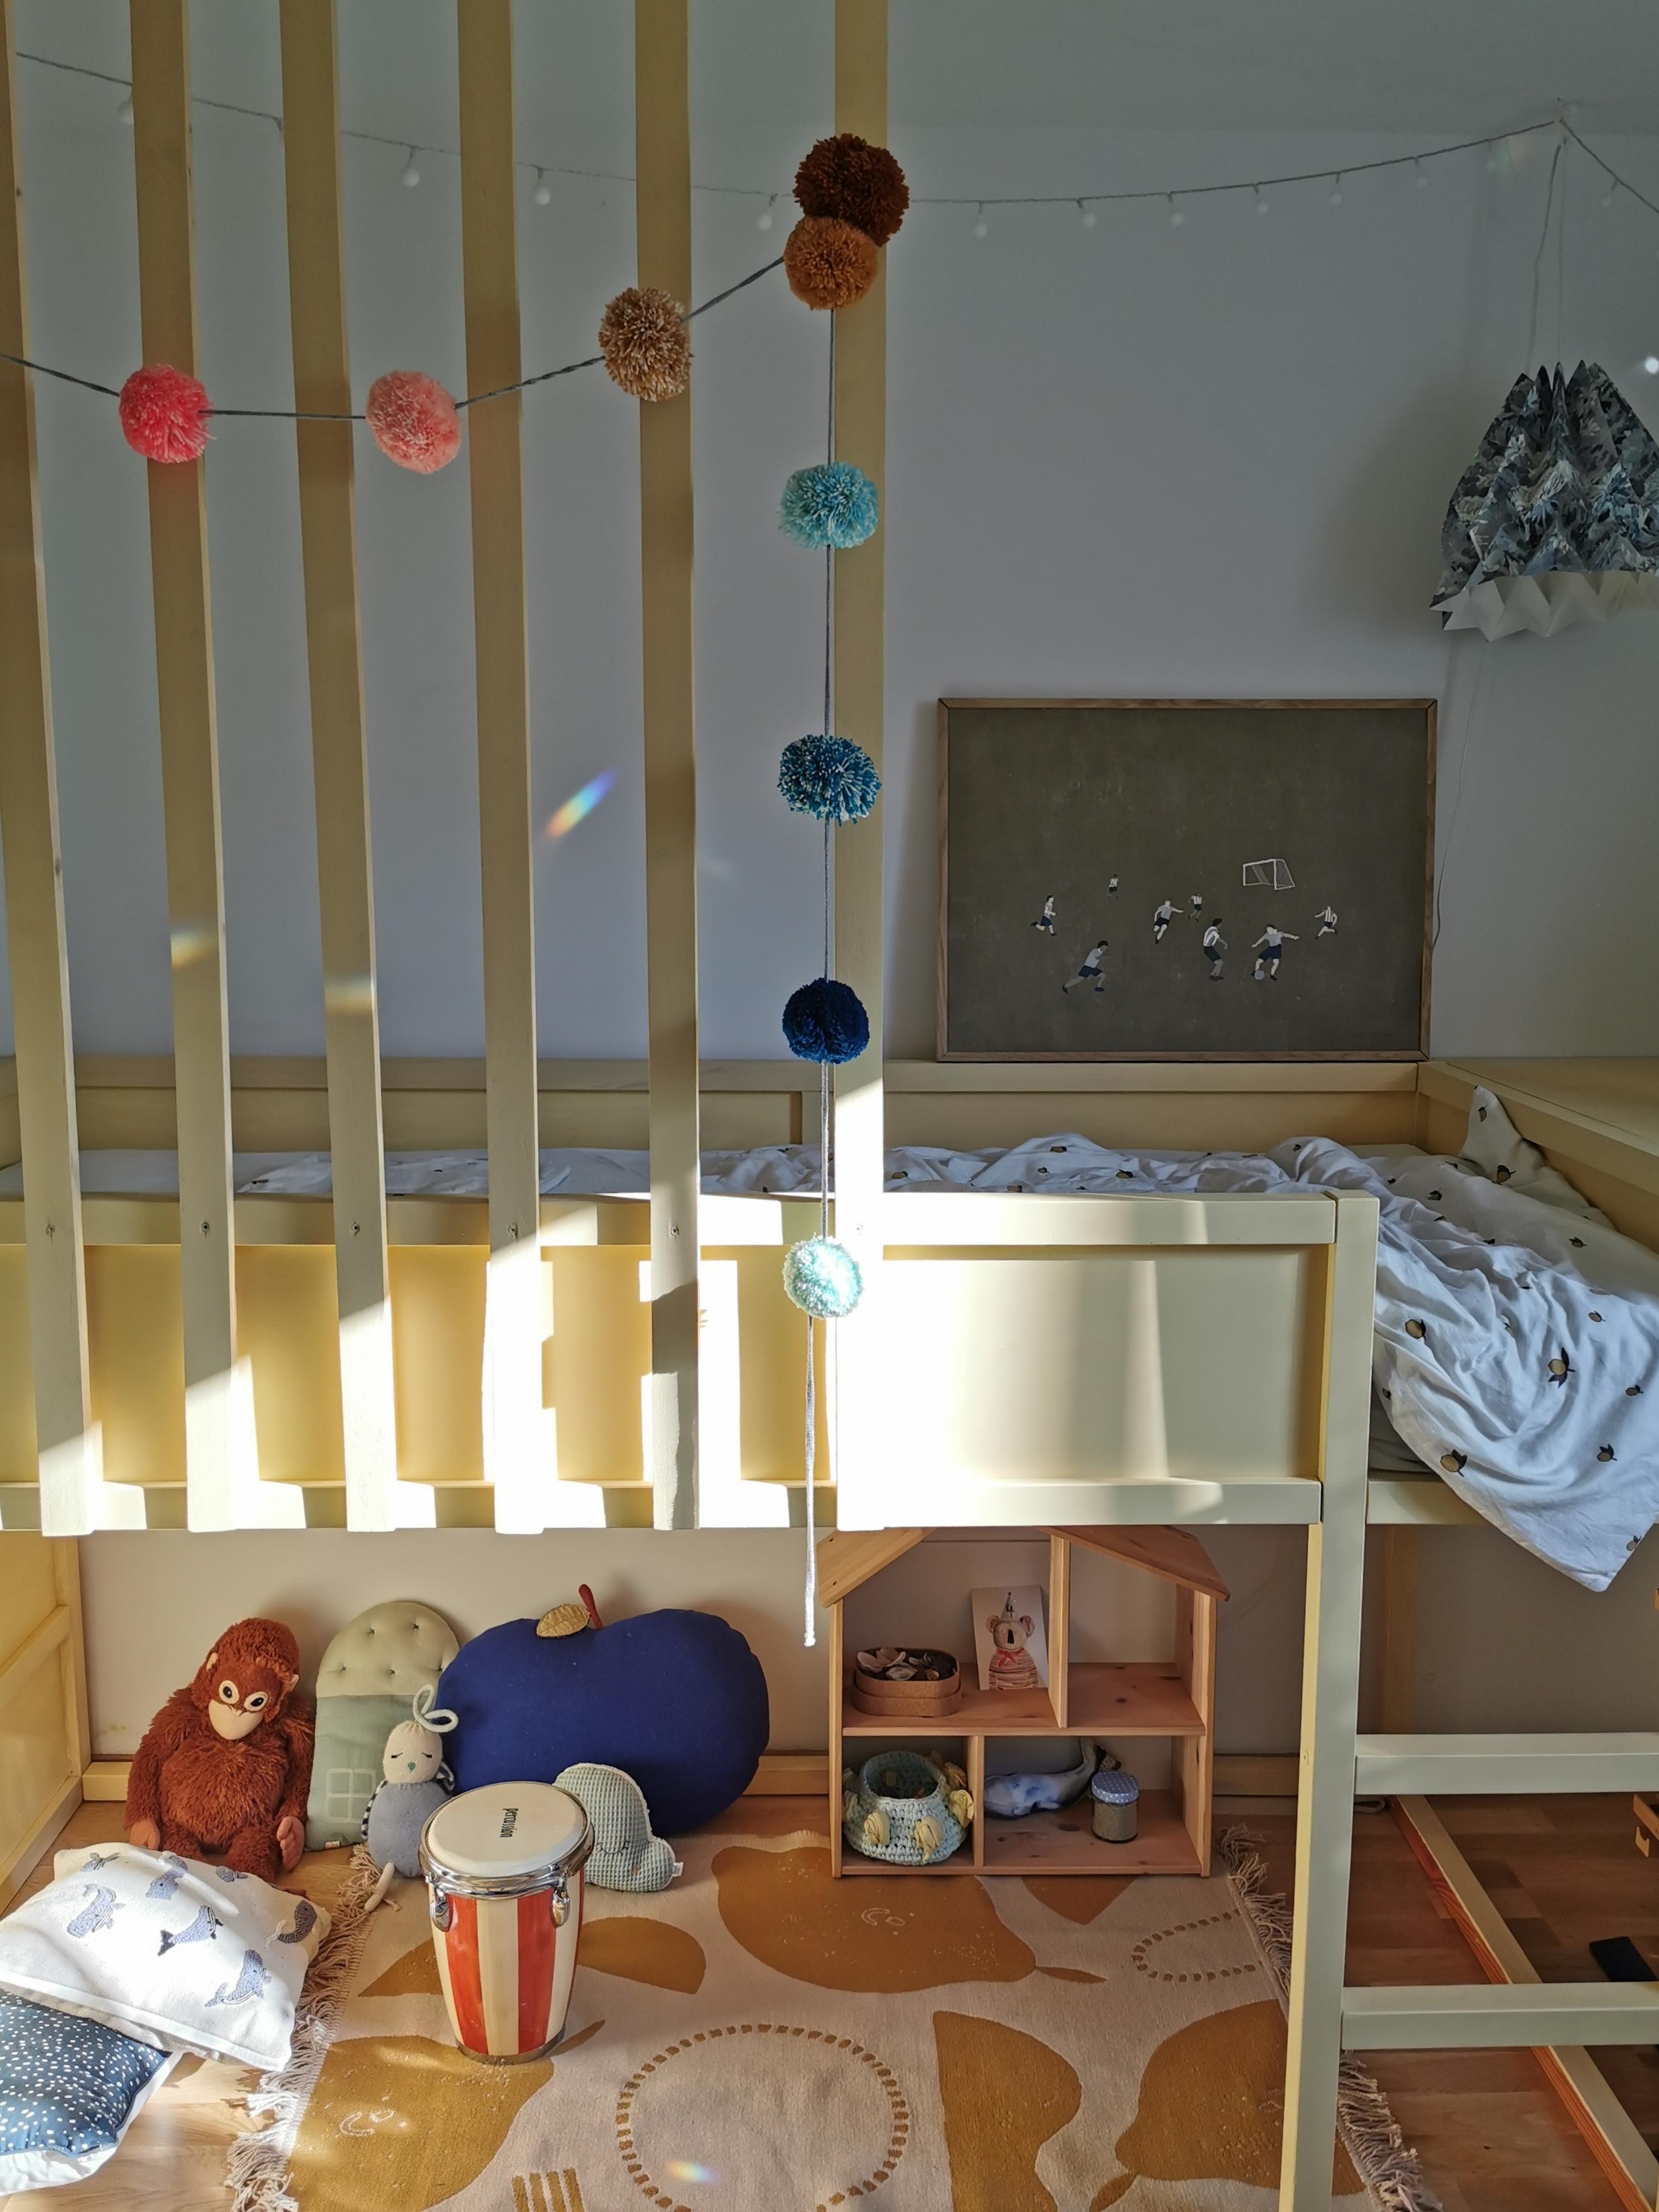 Sonne und Regenbogenpunkte im Kinderzimmer.
#sonne #kinderzimmer #spielzeug #bett #gelb #regenbogen